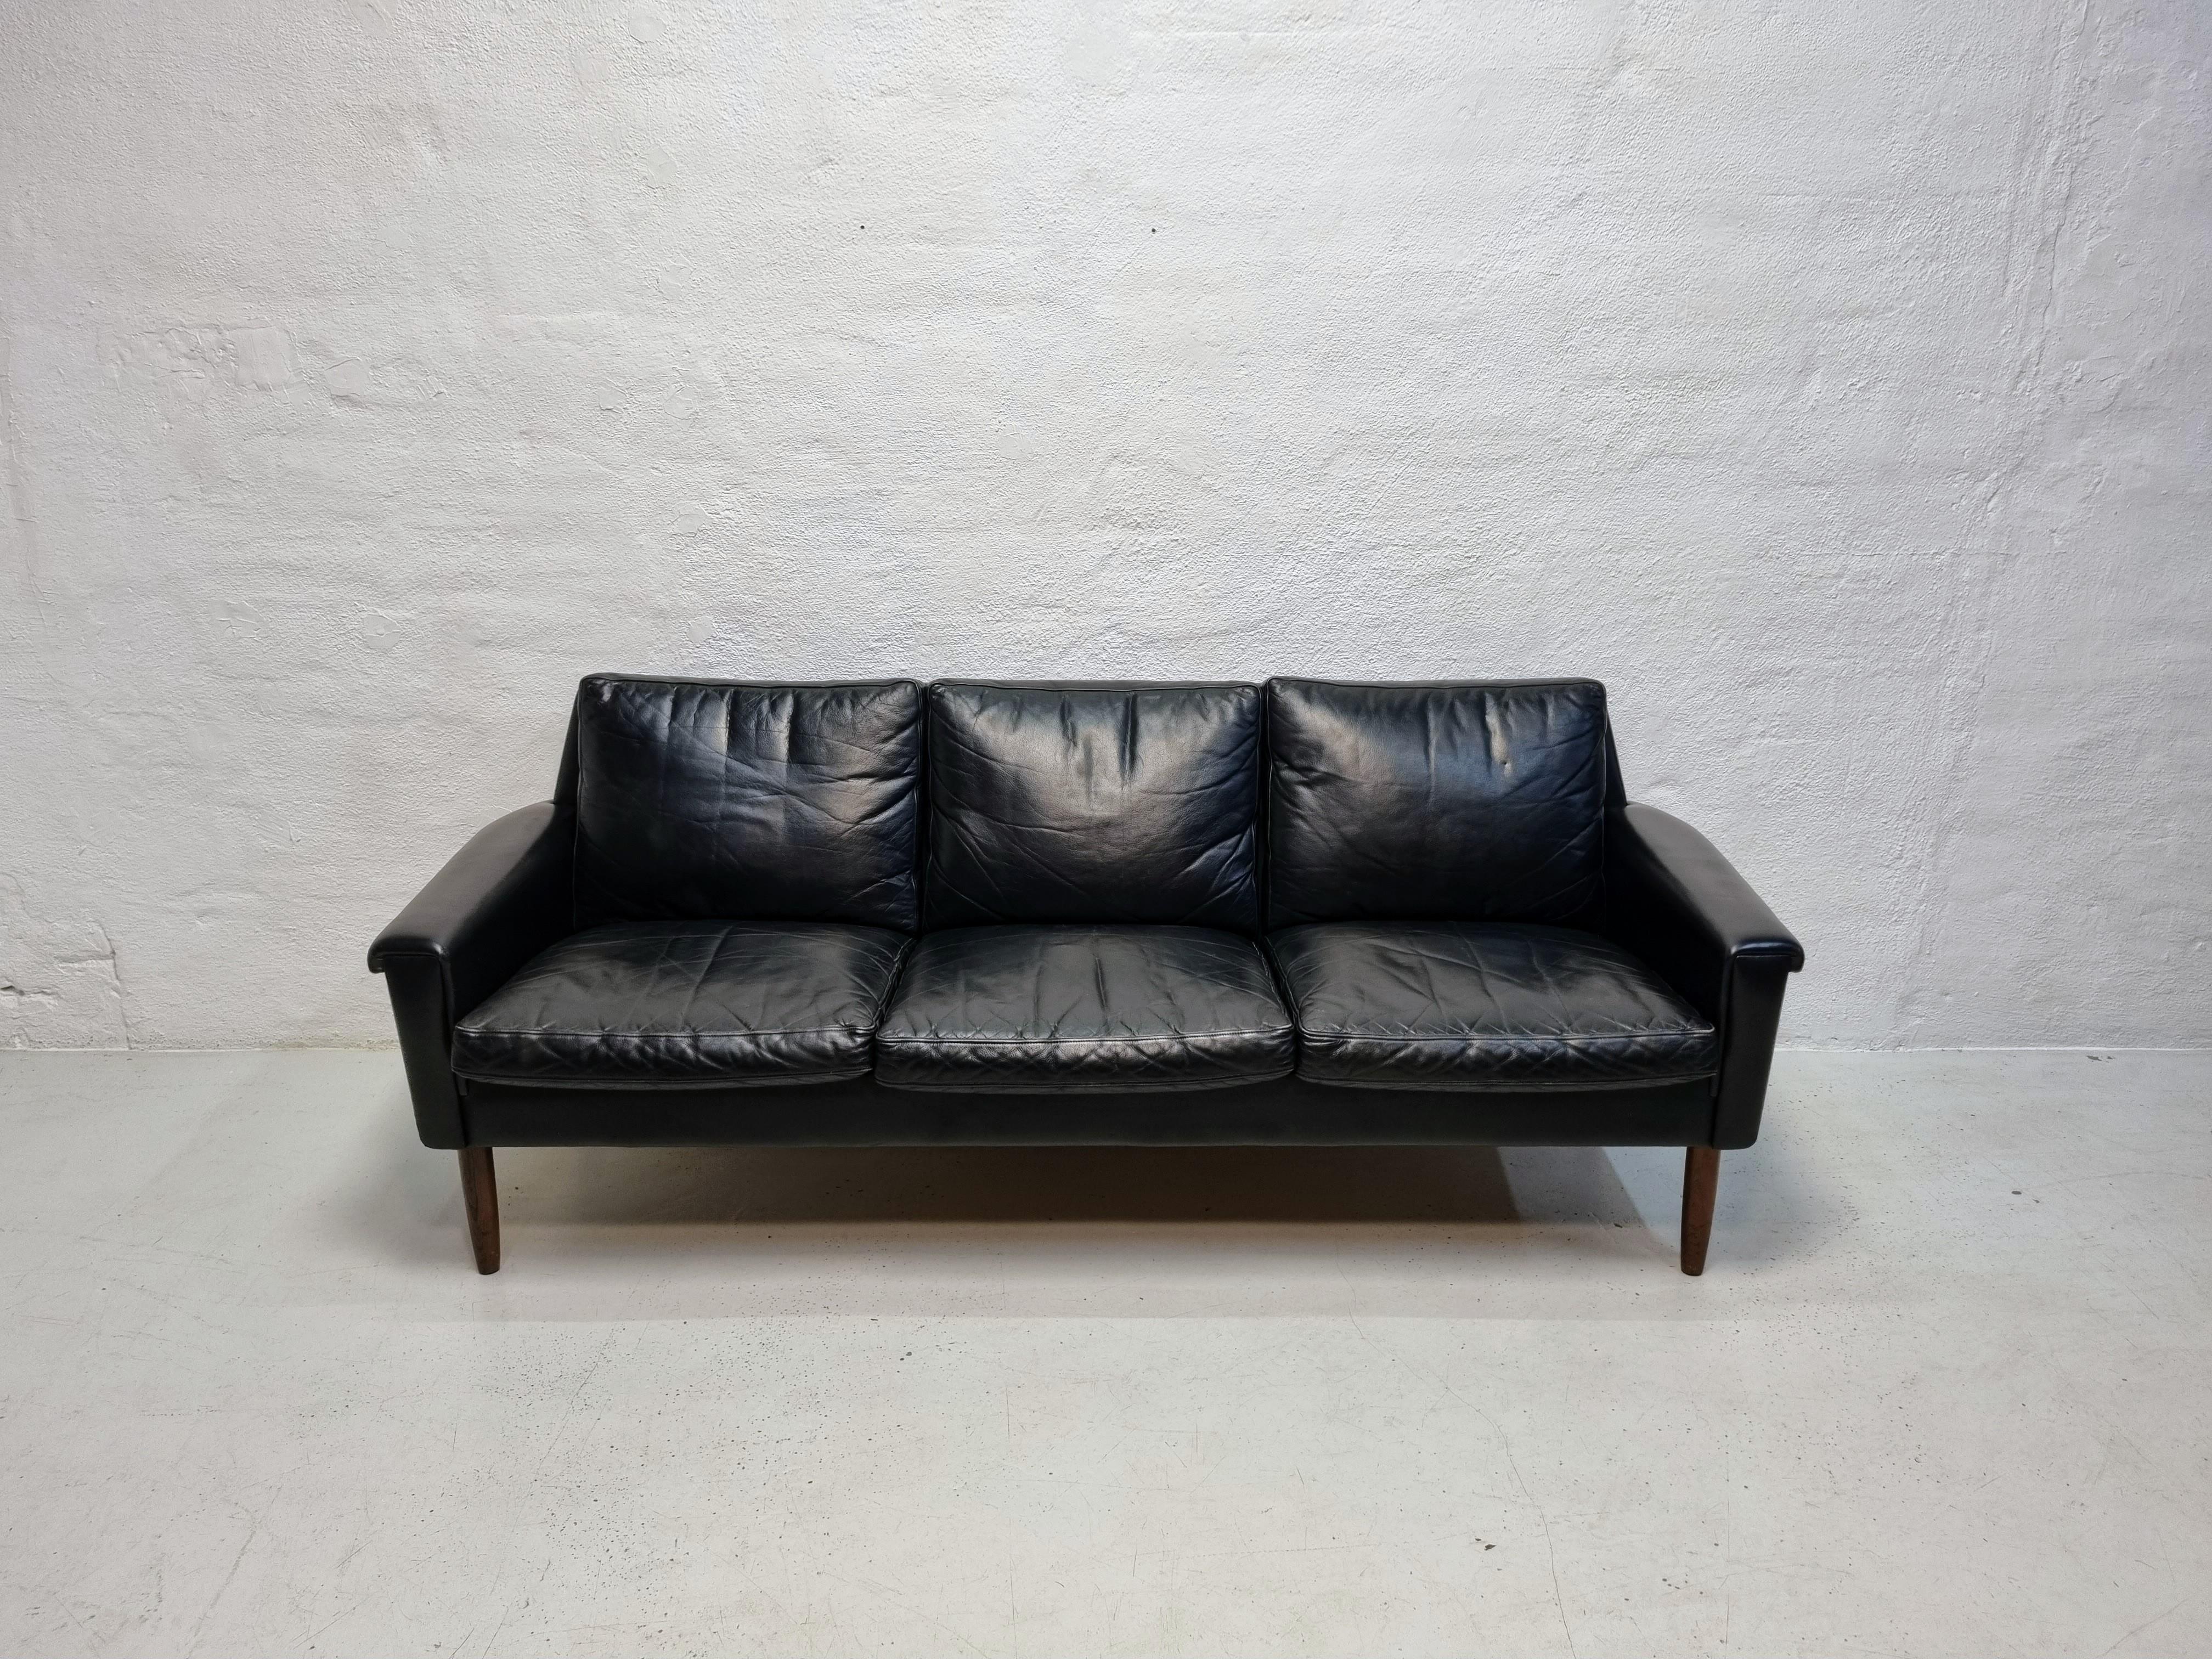 Canapé 3 places en cuir noir sur pieds en bois de rose.
Le canapé est attribué à Georg Thams et produit par Vejen møbelfabrik.
Un canapé agréable et élégant avec un très bon confort d'assise.